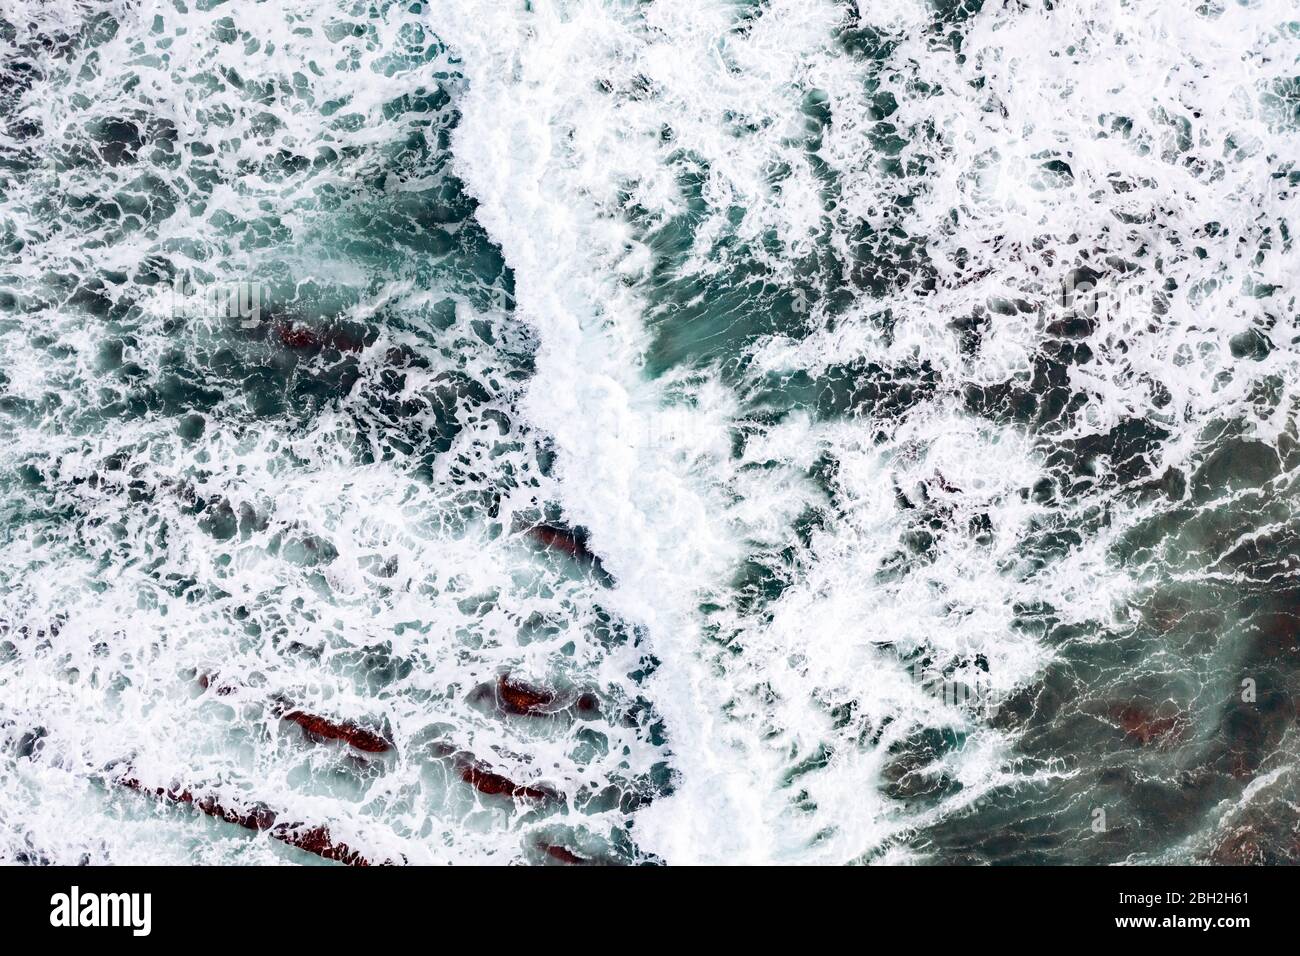 Espagne, Vizcaya, Bilbao, vue aérienne des vagues de l'océan se brossant contre la côte rocheuse Banque D'Images